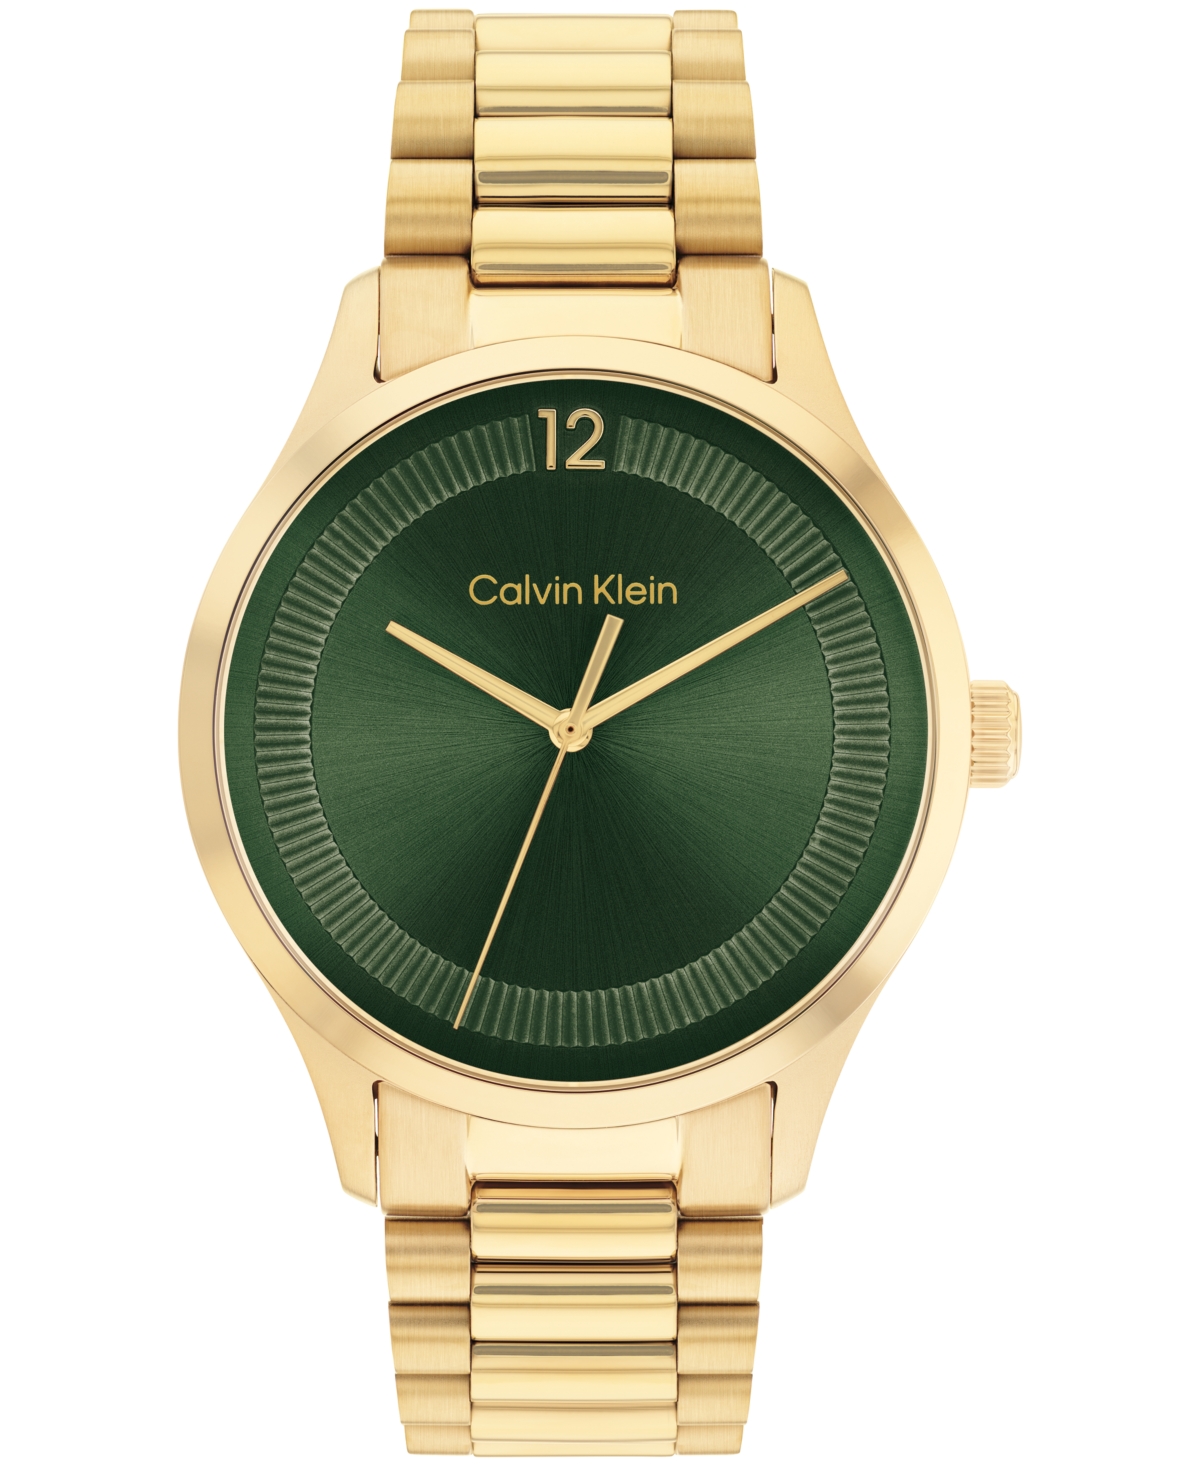 Calvin Klein Unisex 3-hand Gold-tone Stainless Steel Bracelet Watch 40mm